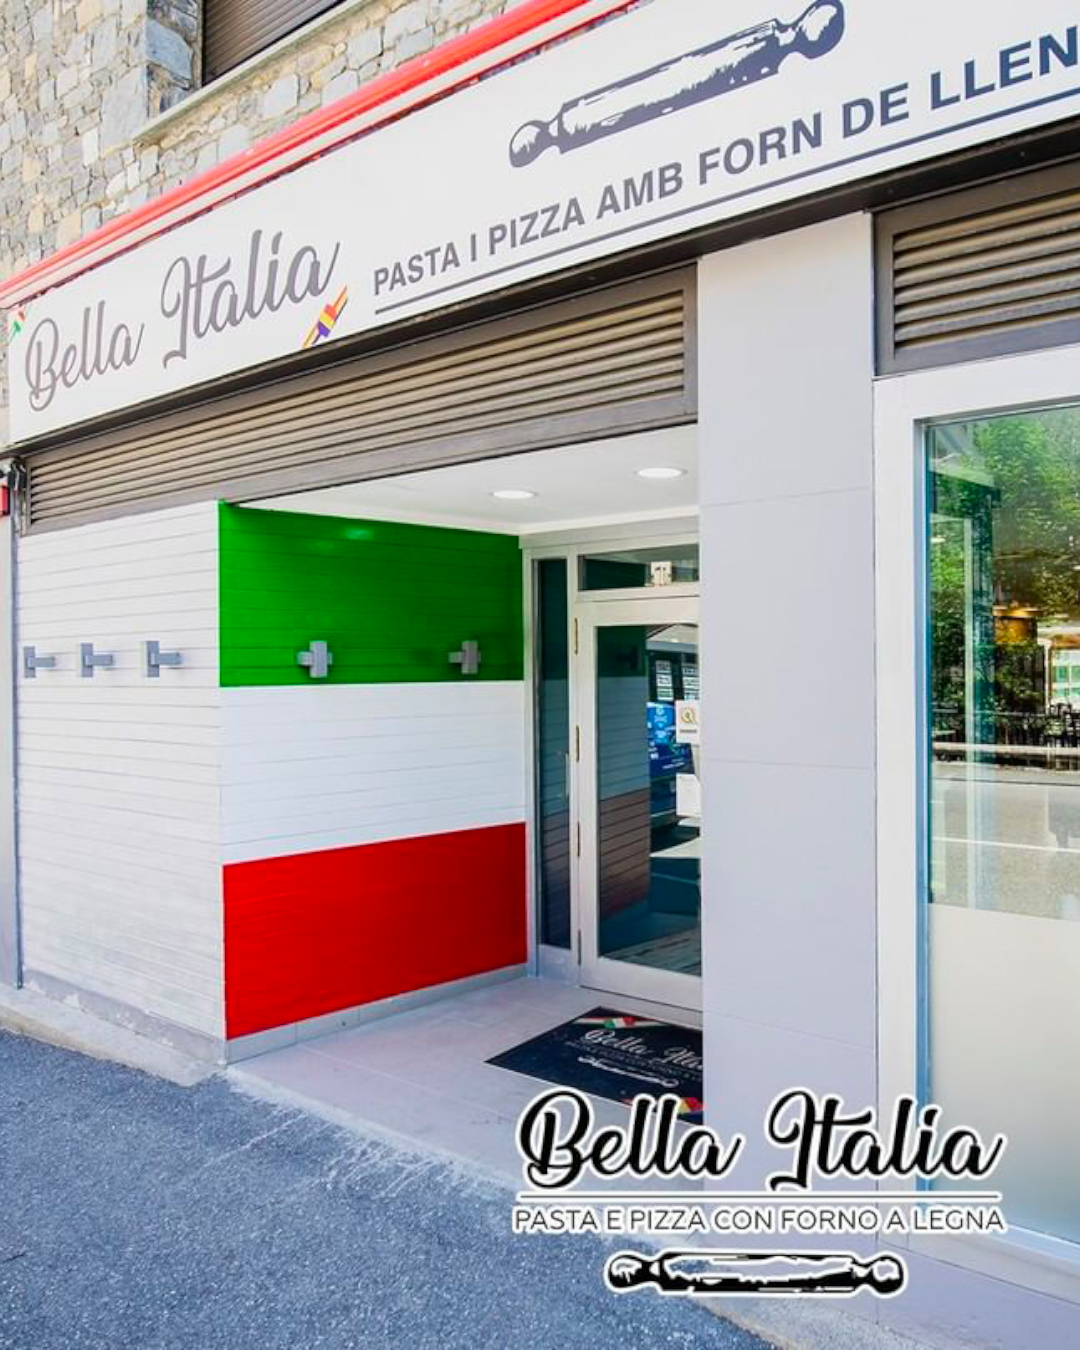 pizzeria-bella-italia-andorra-encamp-1.jpg